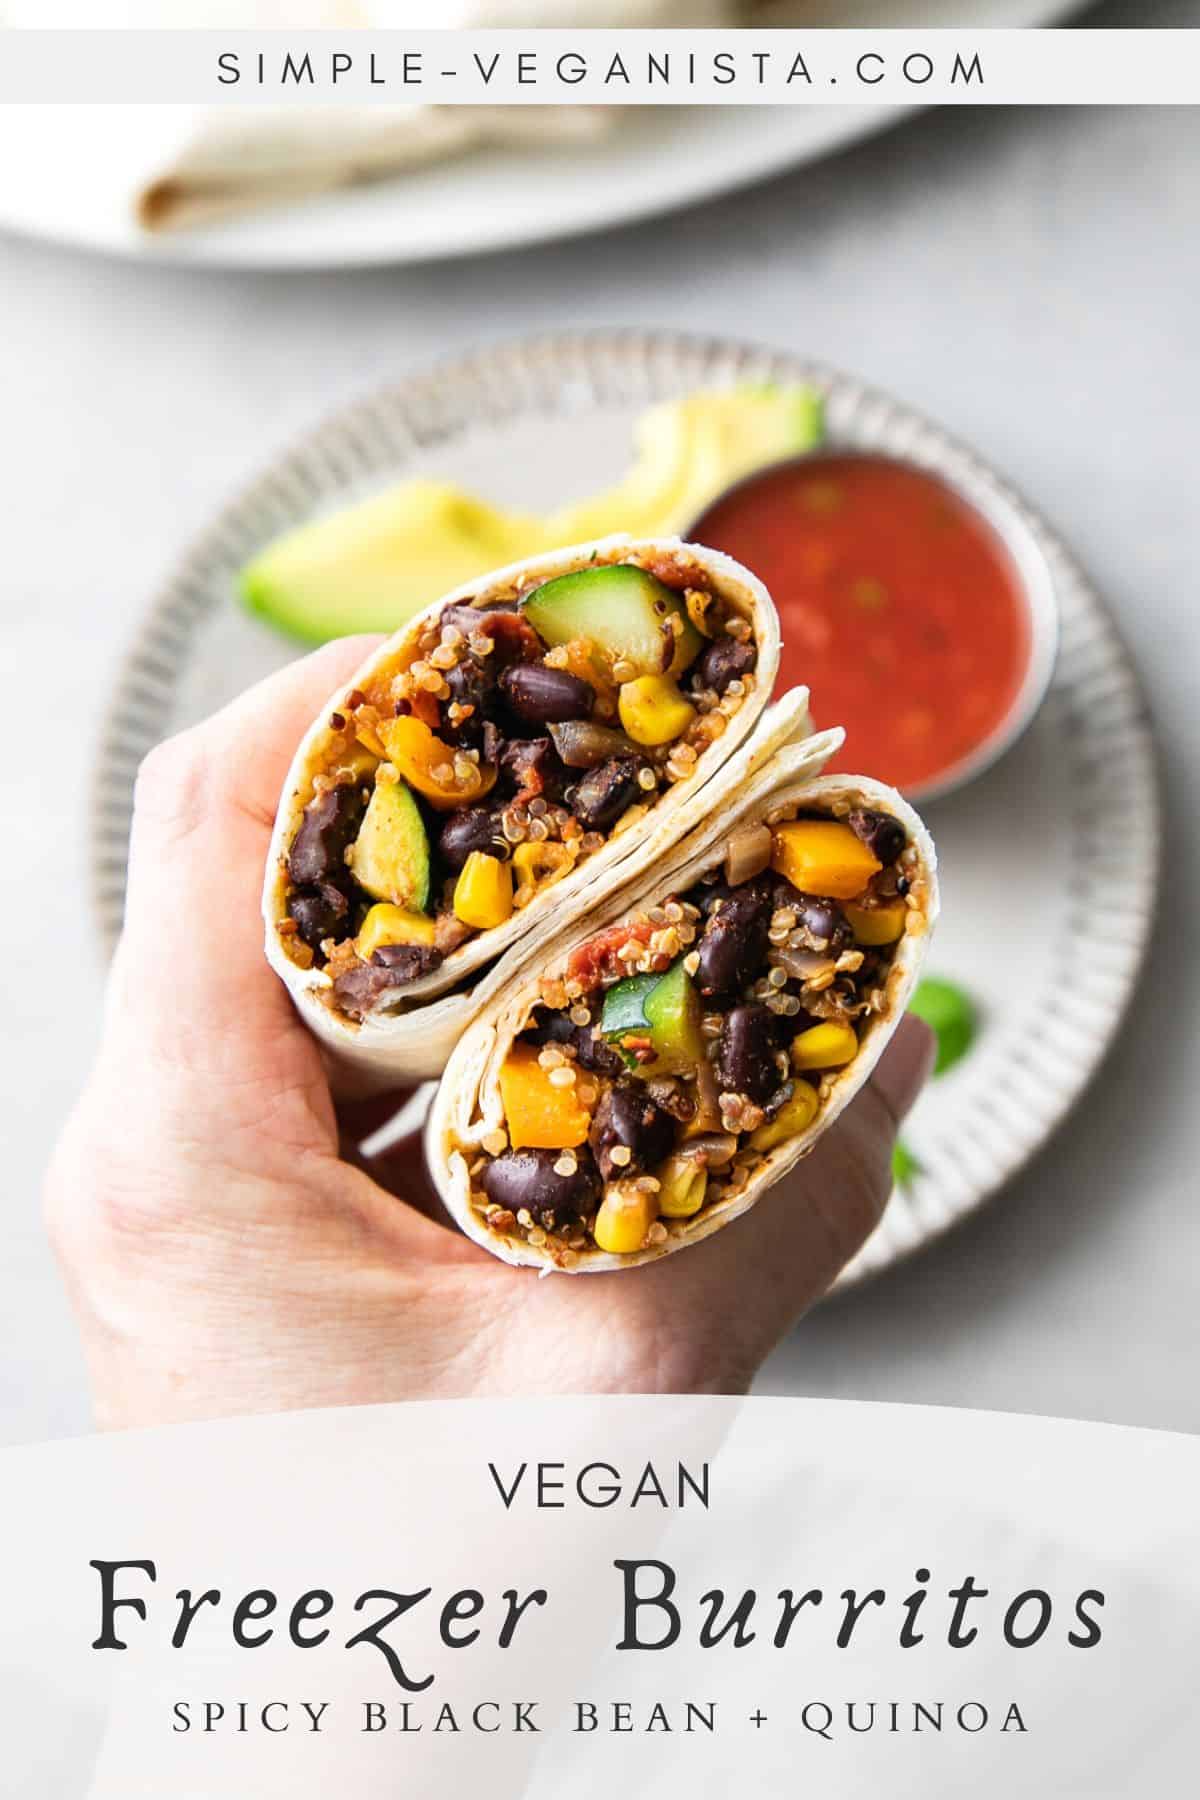 Spicy Black Bean + Quinoa Burritos (Vegan Freezer Burritos) - TSV